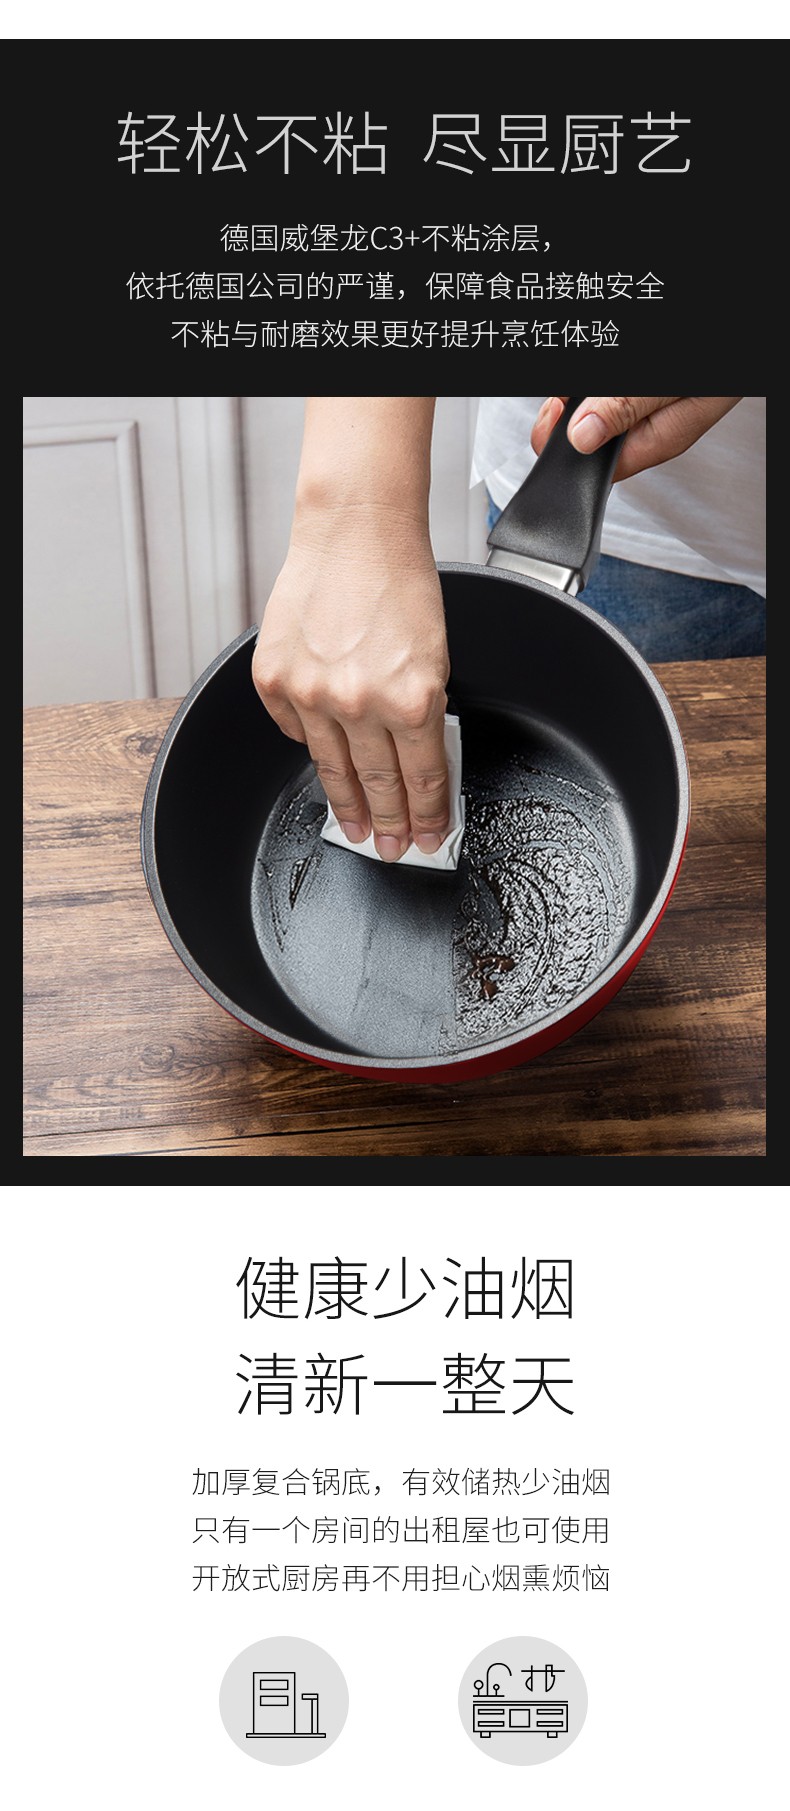 双立人厨房使用20cm料理锅